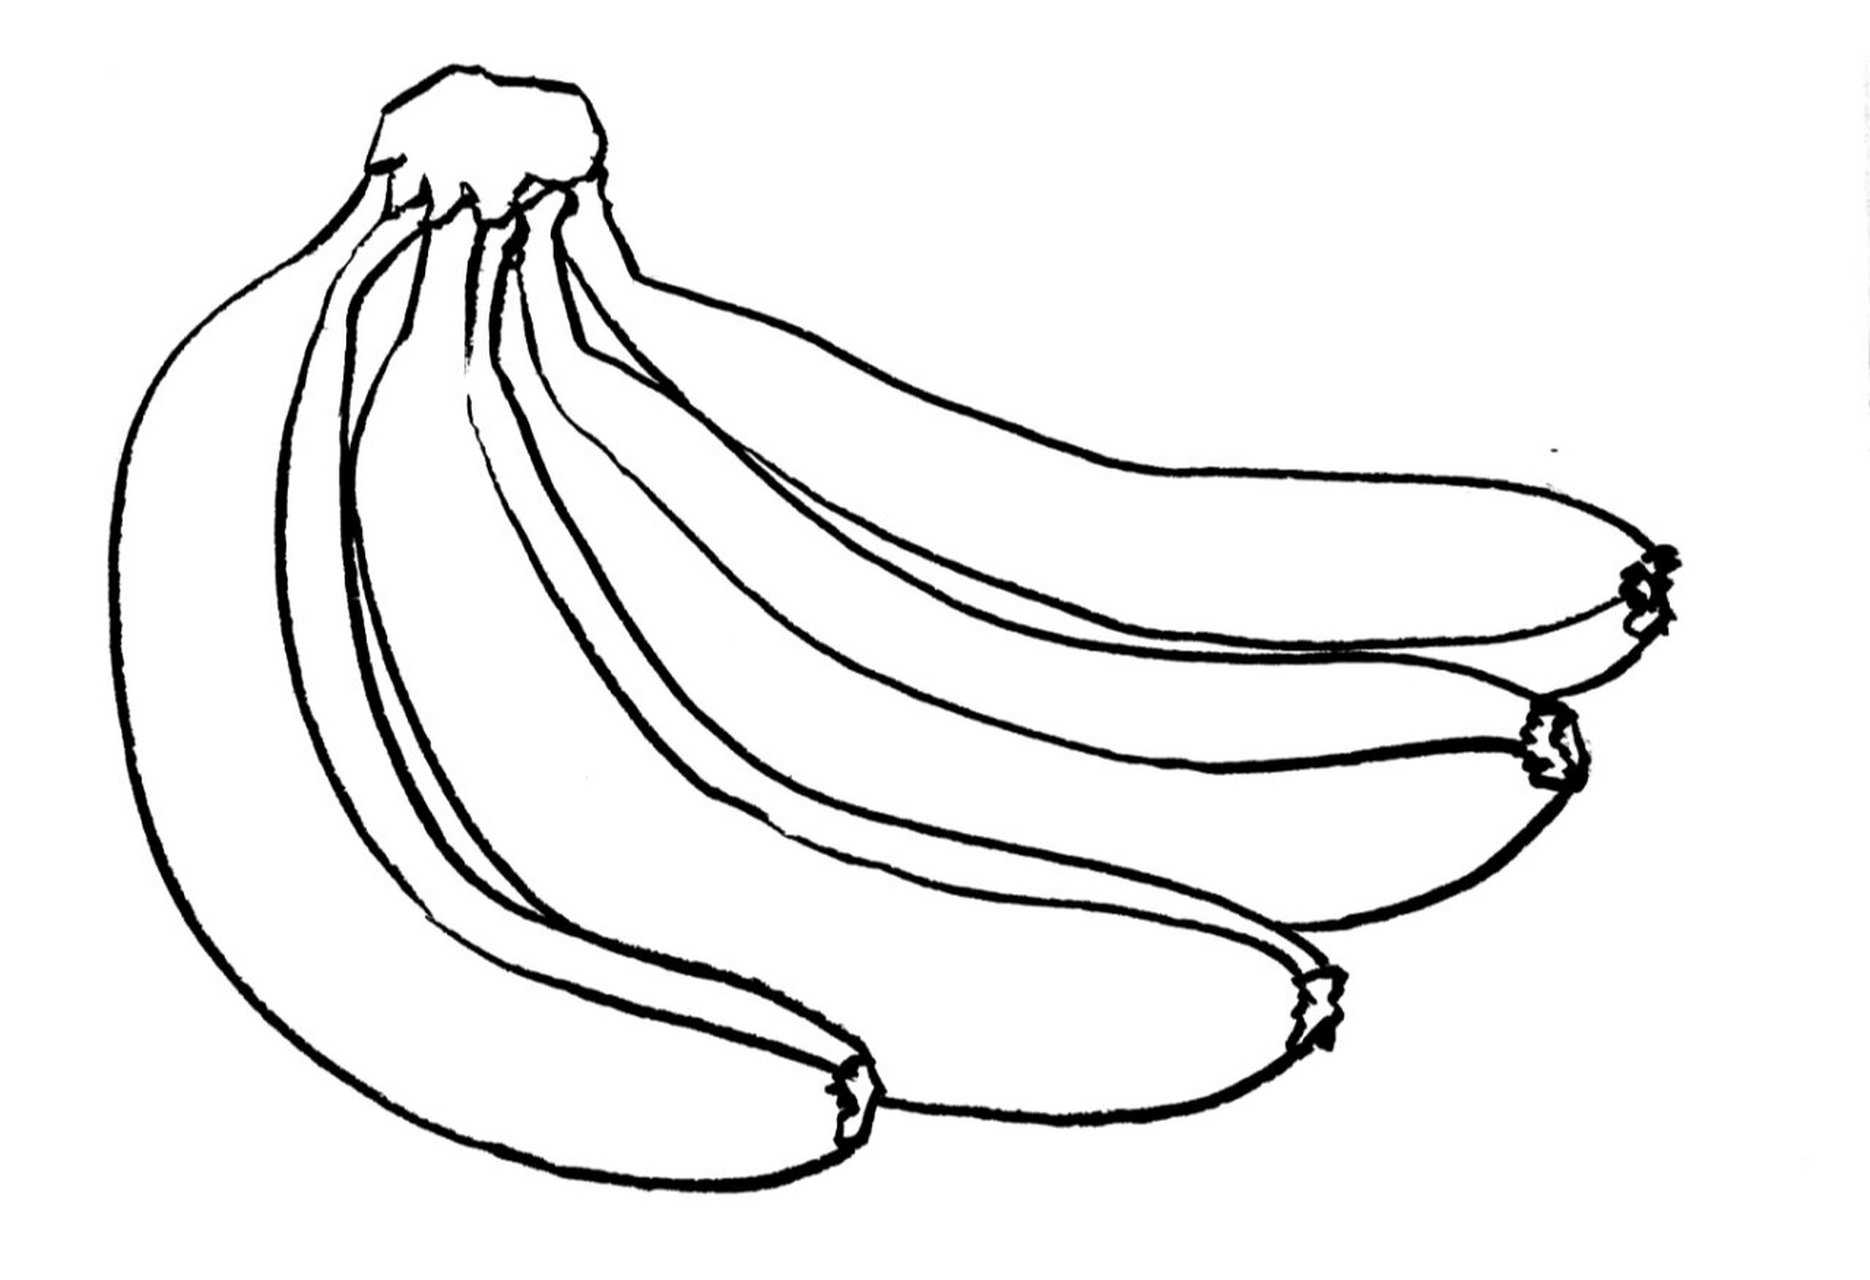 《香蕉写生》 适合年龄:8岁以上 绘画工具:铅笔,橡皮,勾线笔,素描纸